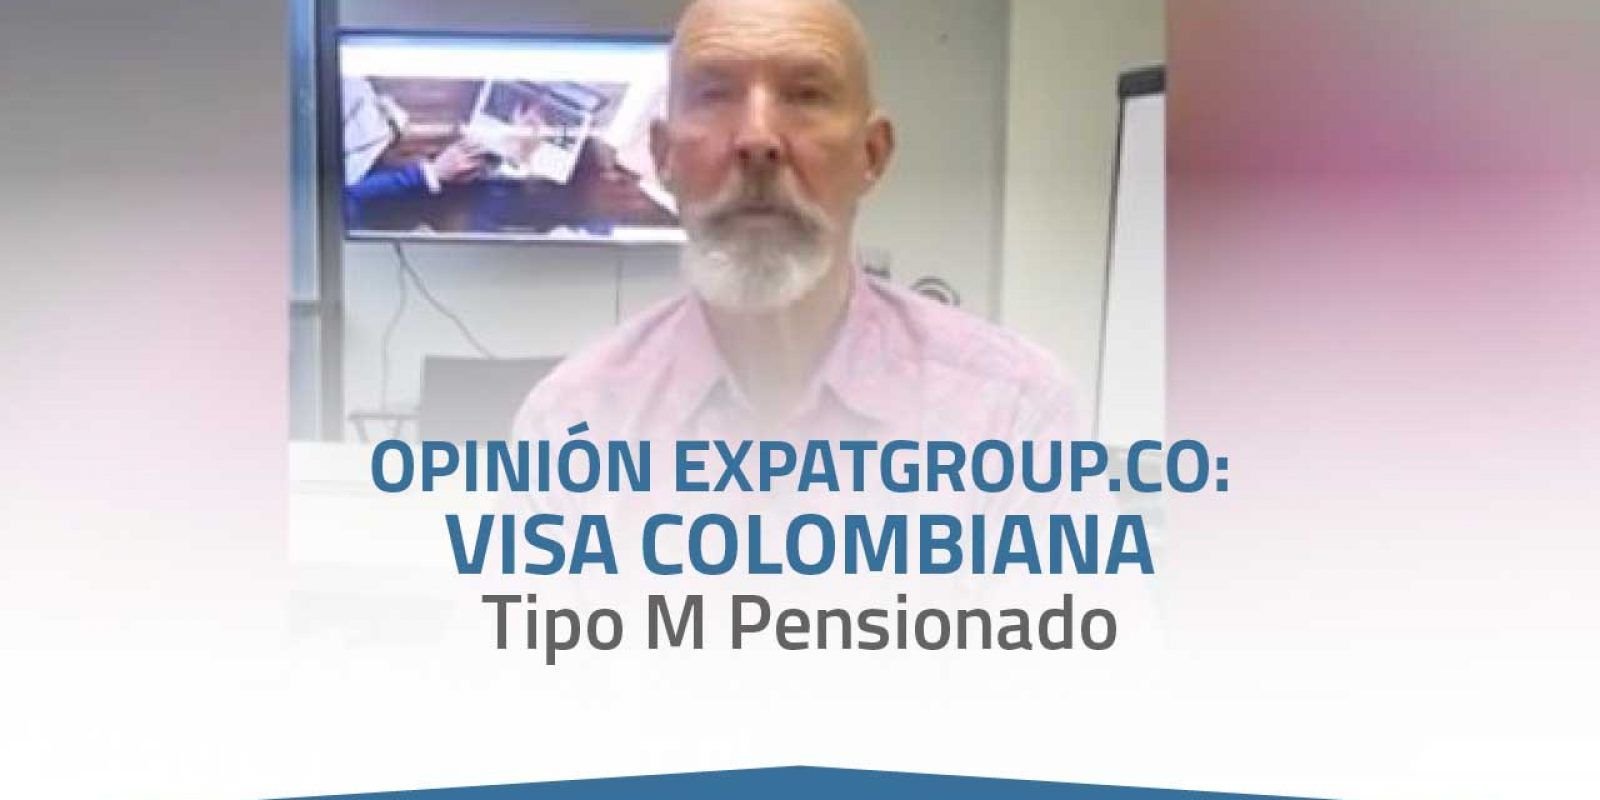 Expatgroup.co Opinión: Visa Colombiana Tipo M Pensionado